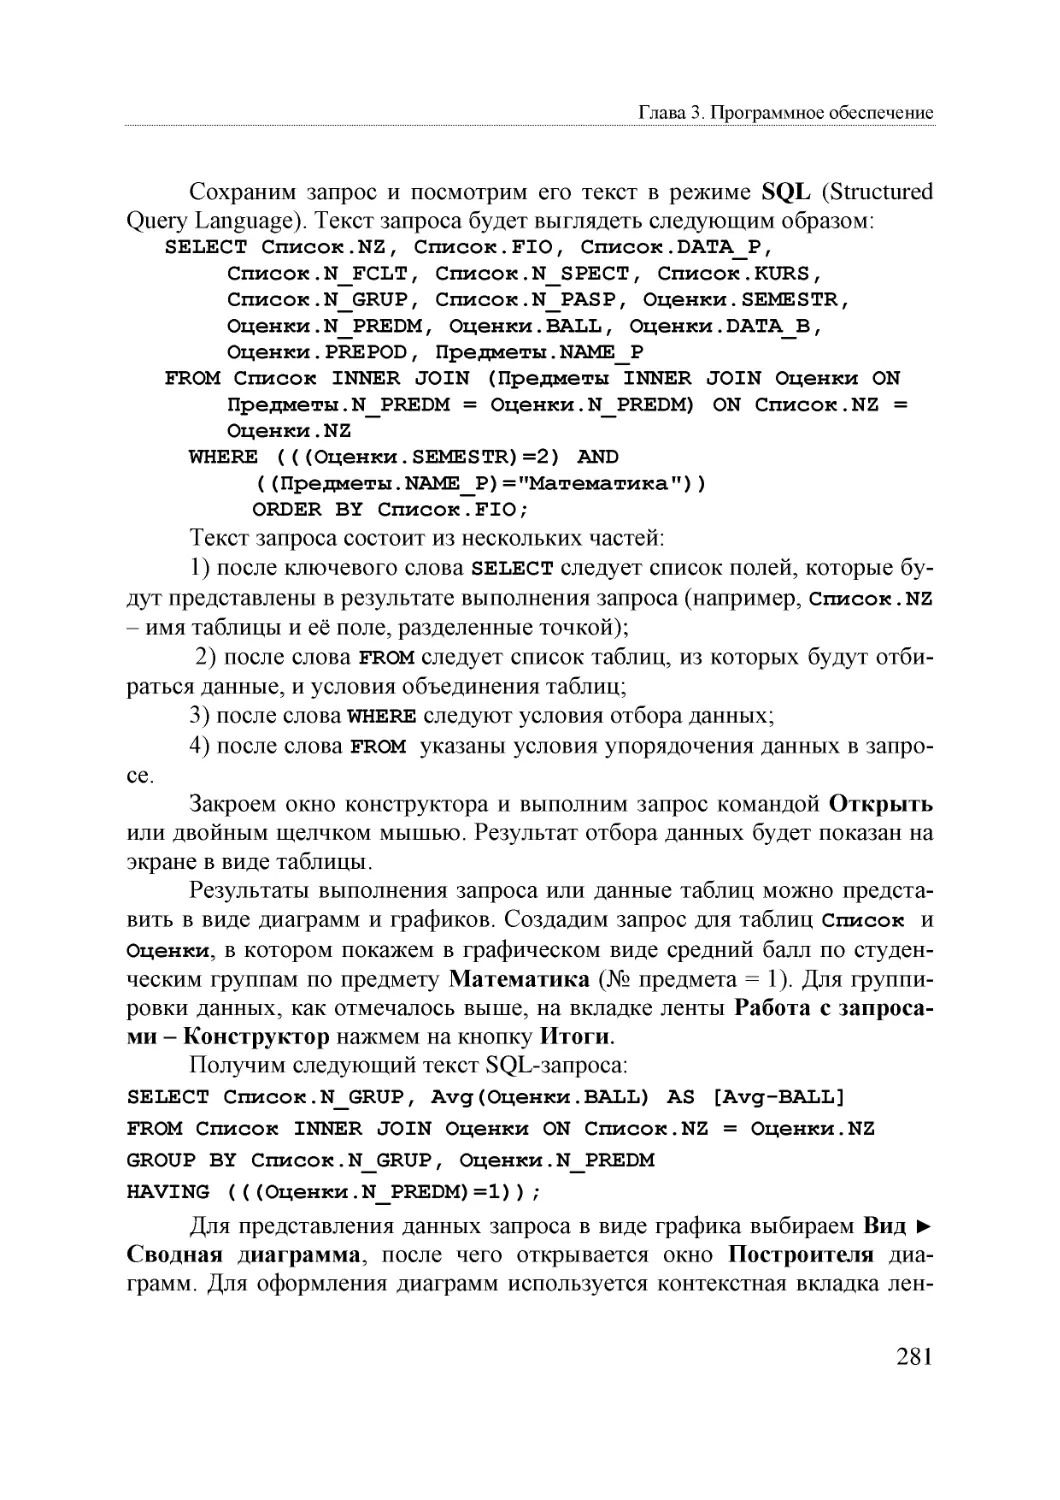 Informatika_Uchebnik_dlya_vuzov_2010 281